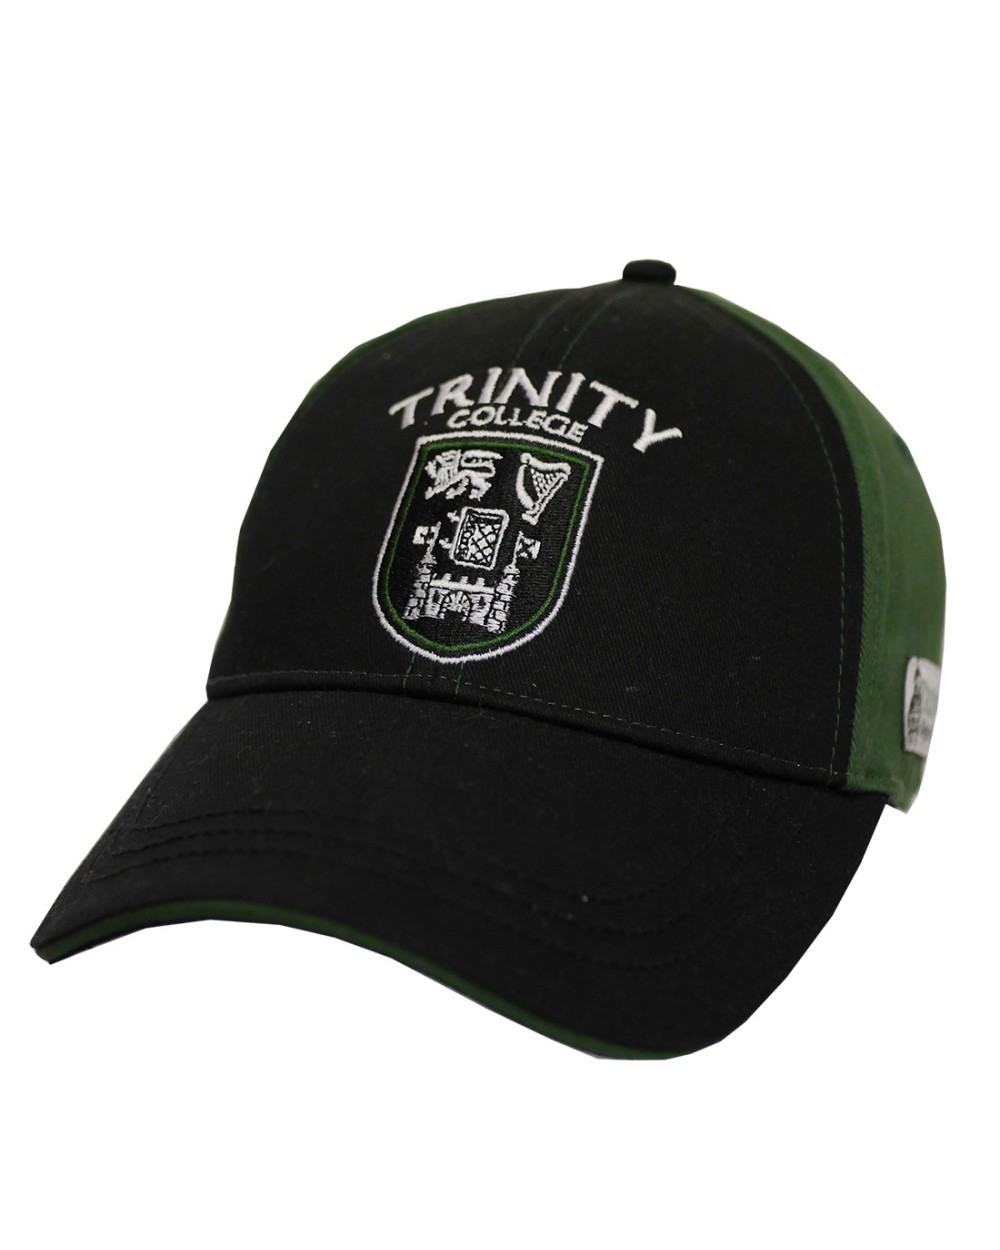 Trinity College Dublin Black/ Bottle Green Crest Baseball Cap